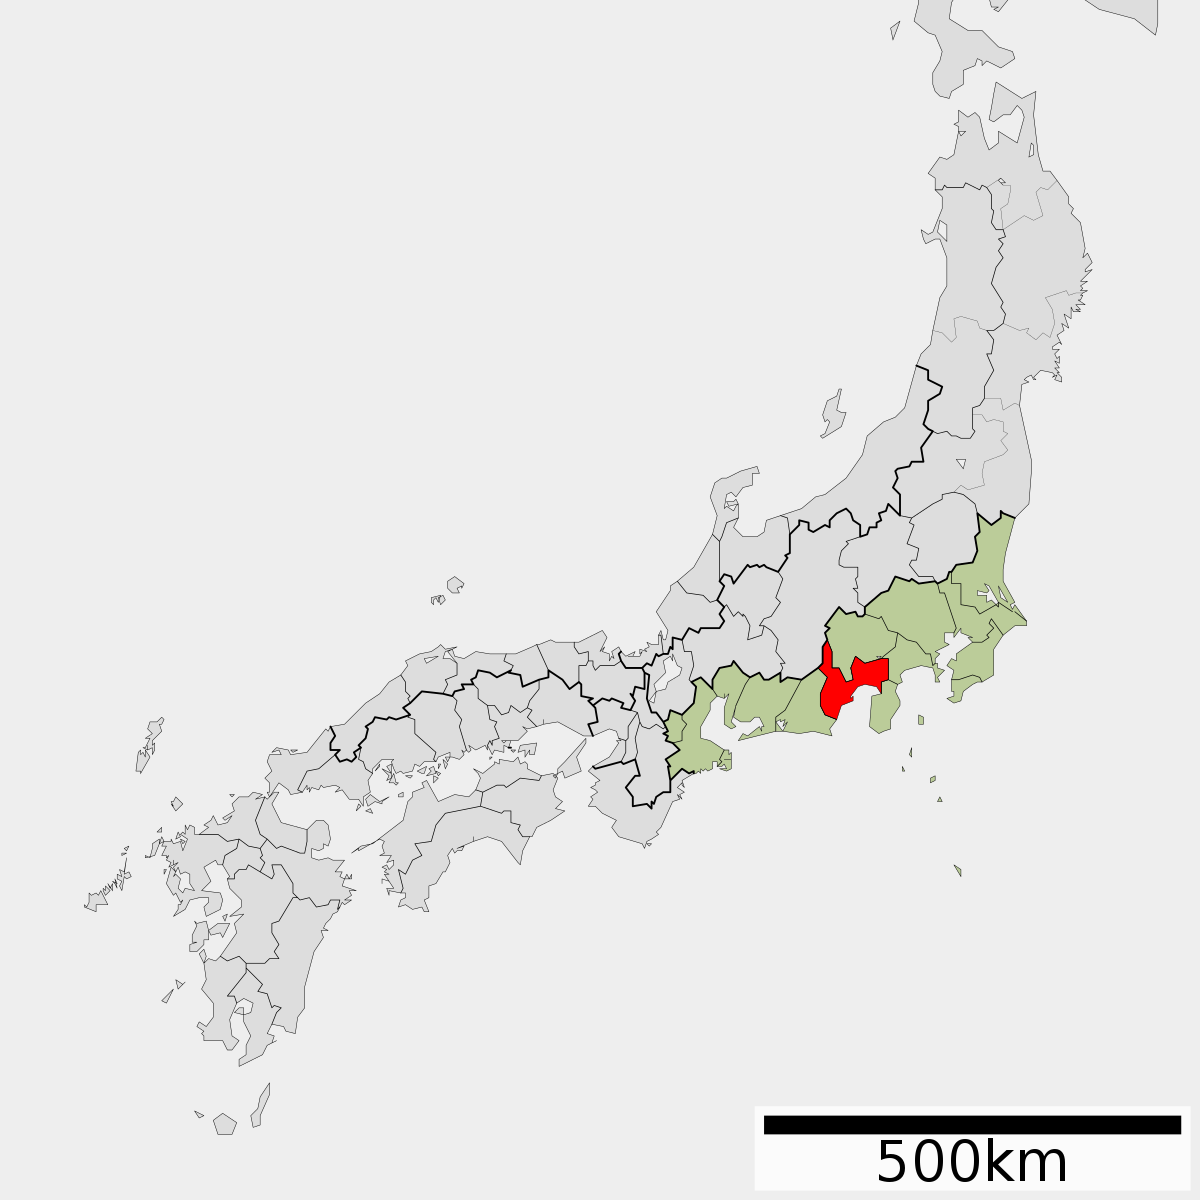 駿河国 Wikipedia